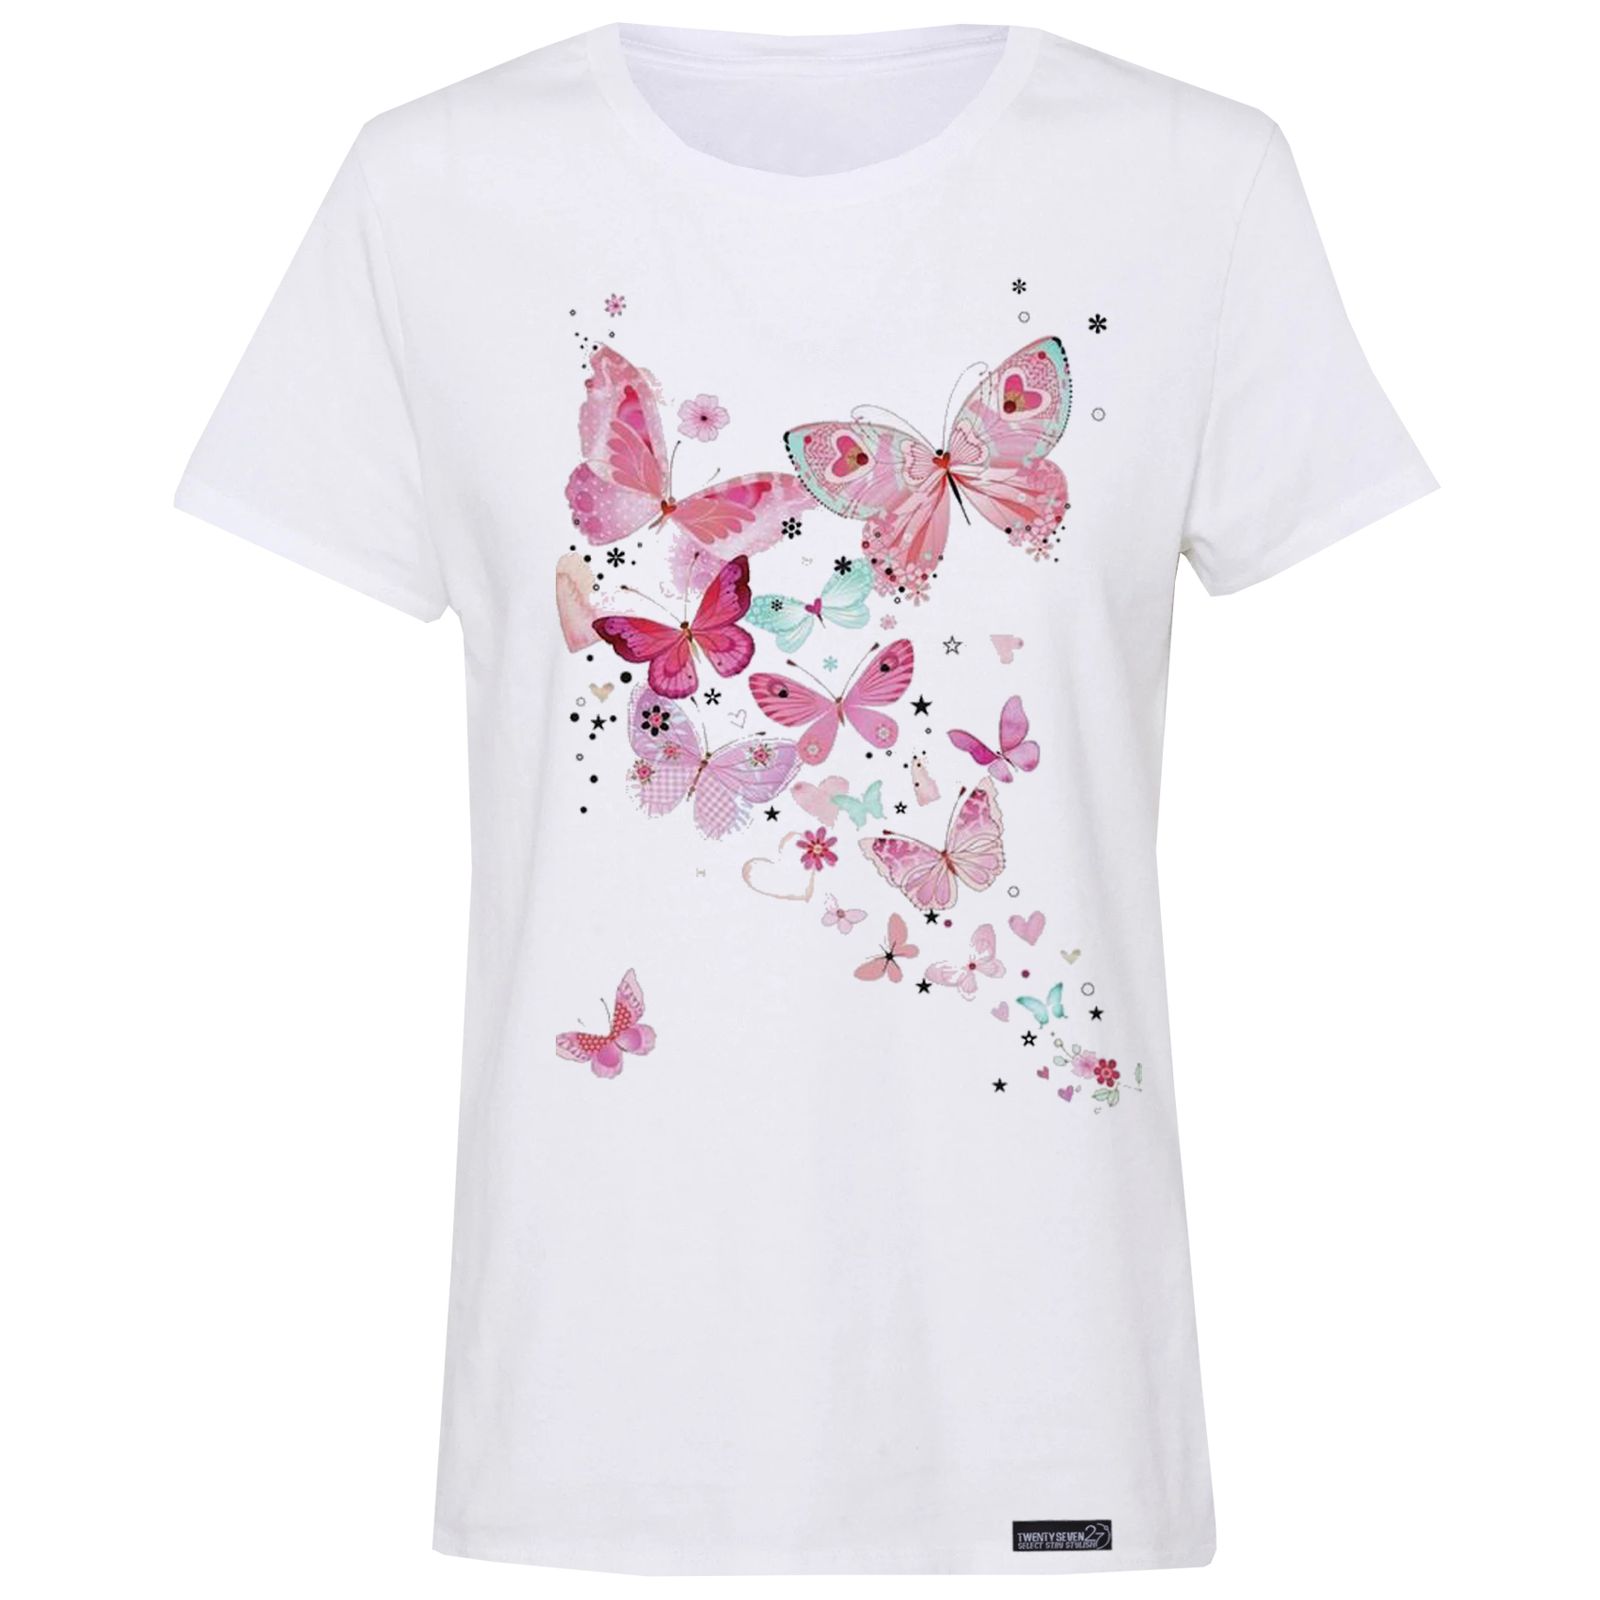 تی شرت آستین کوتاه زنانه 27 مدل پروانه کد WN829 -  - 2